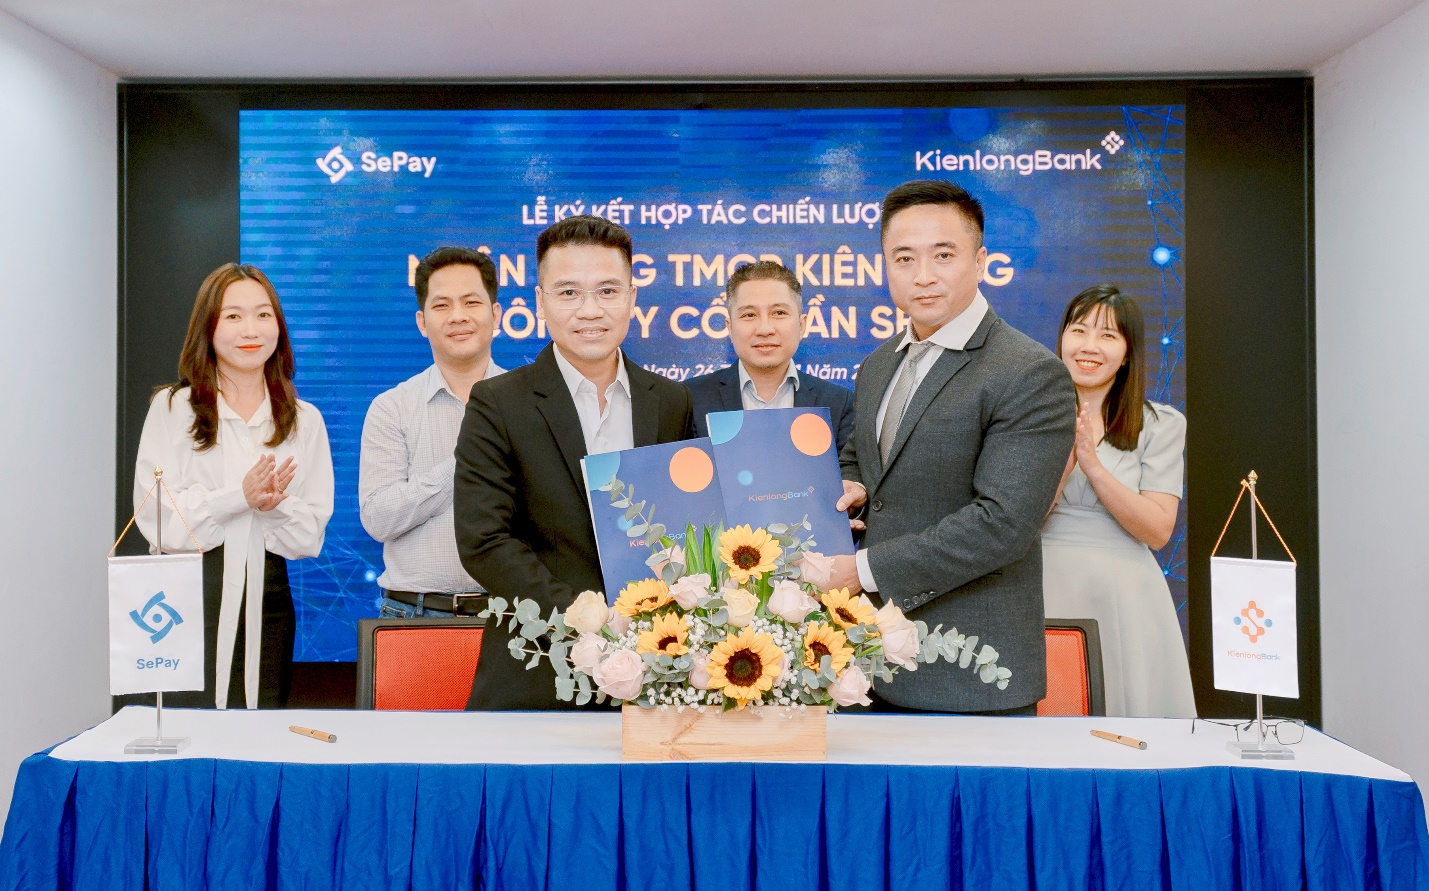 KienlongBank ký kết hợp tác chiến lược với SePay - Ảnh 1.